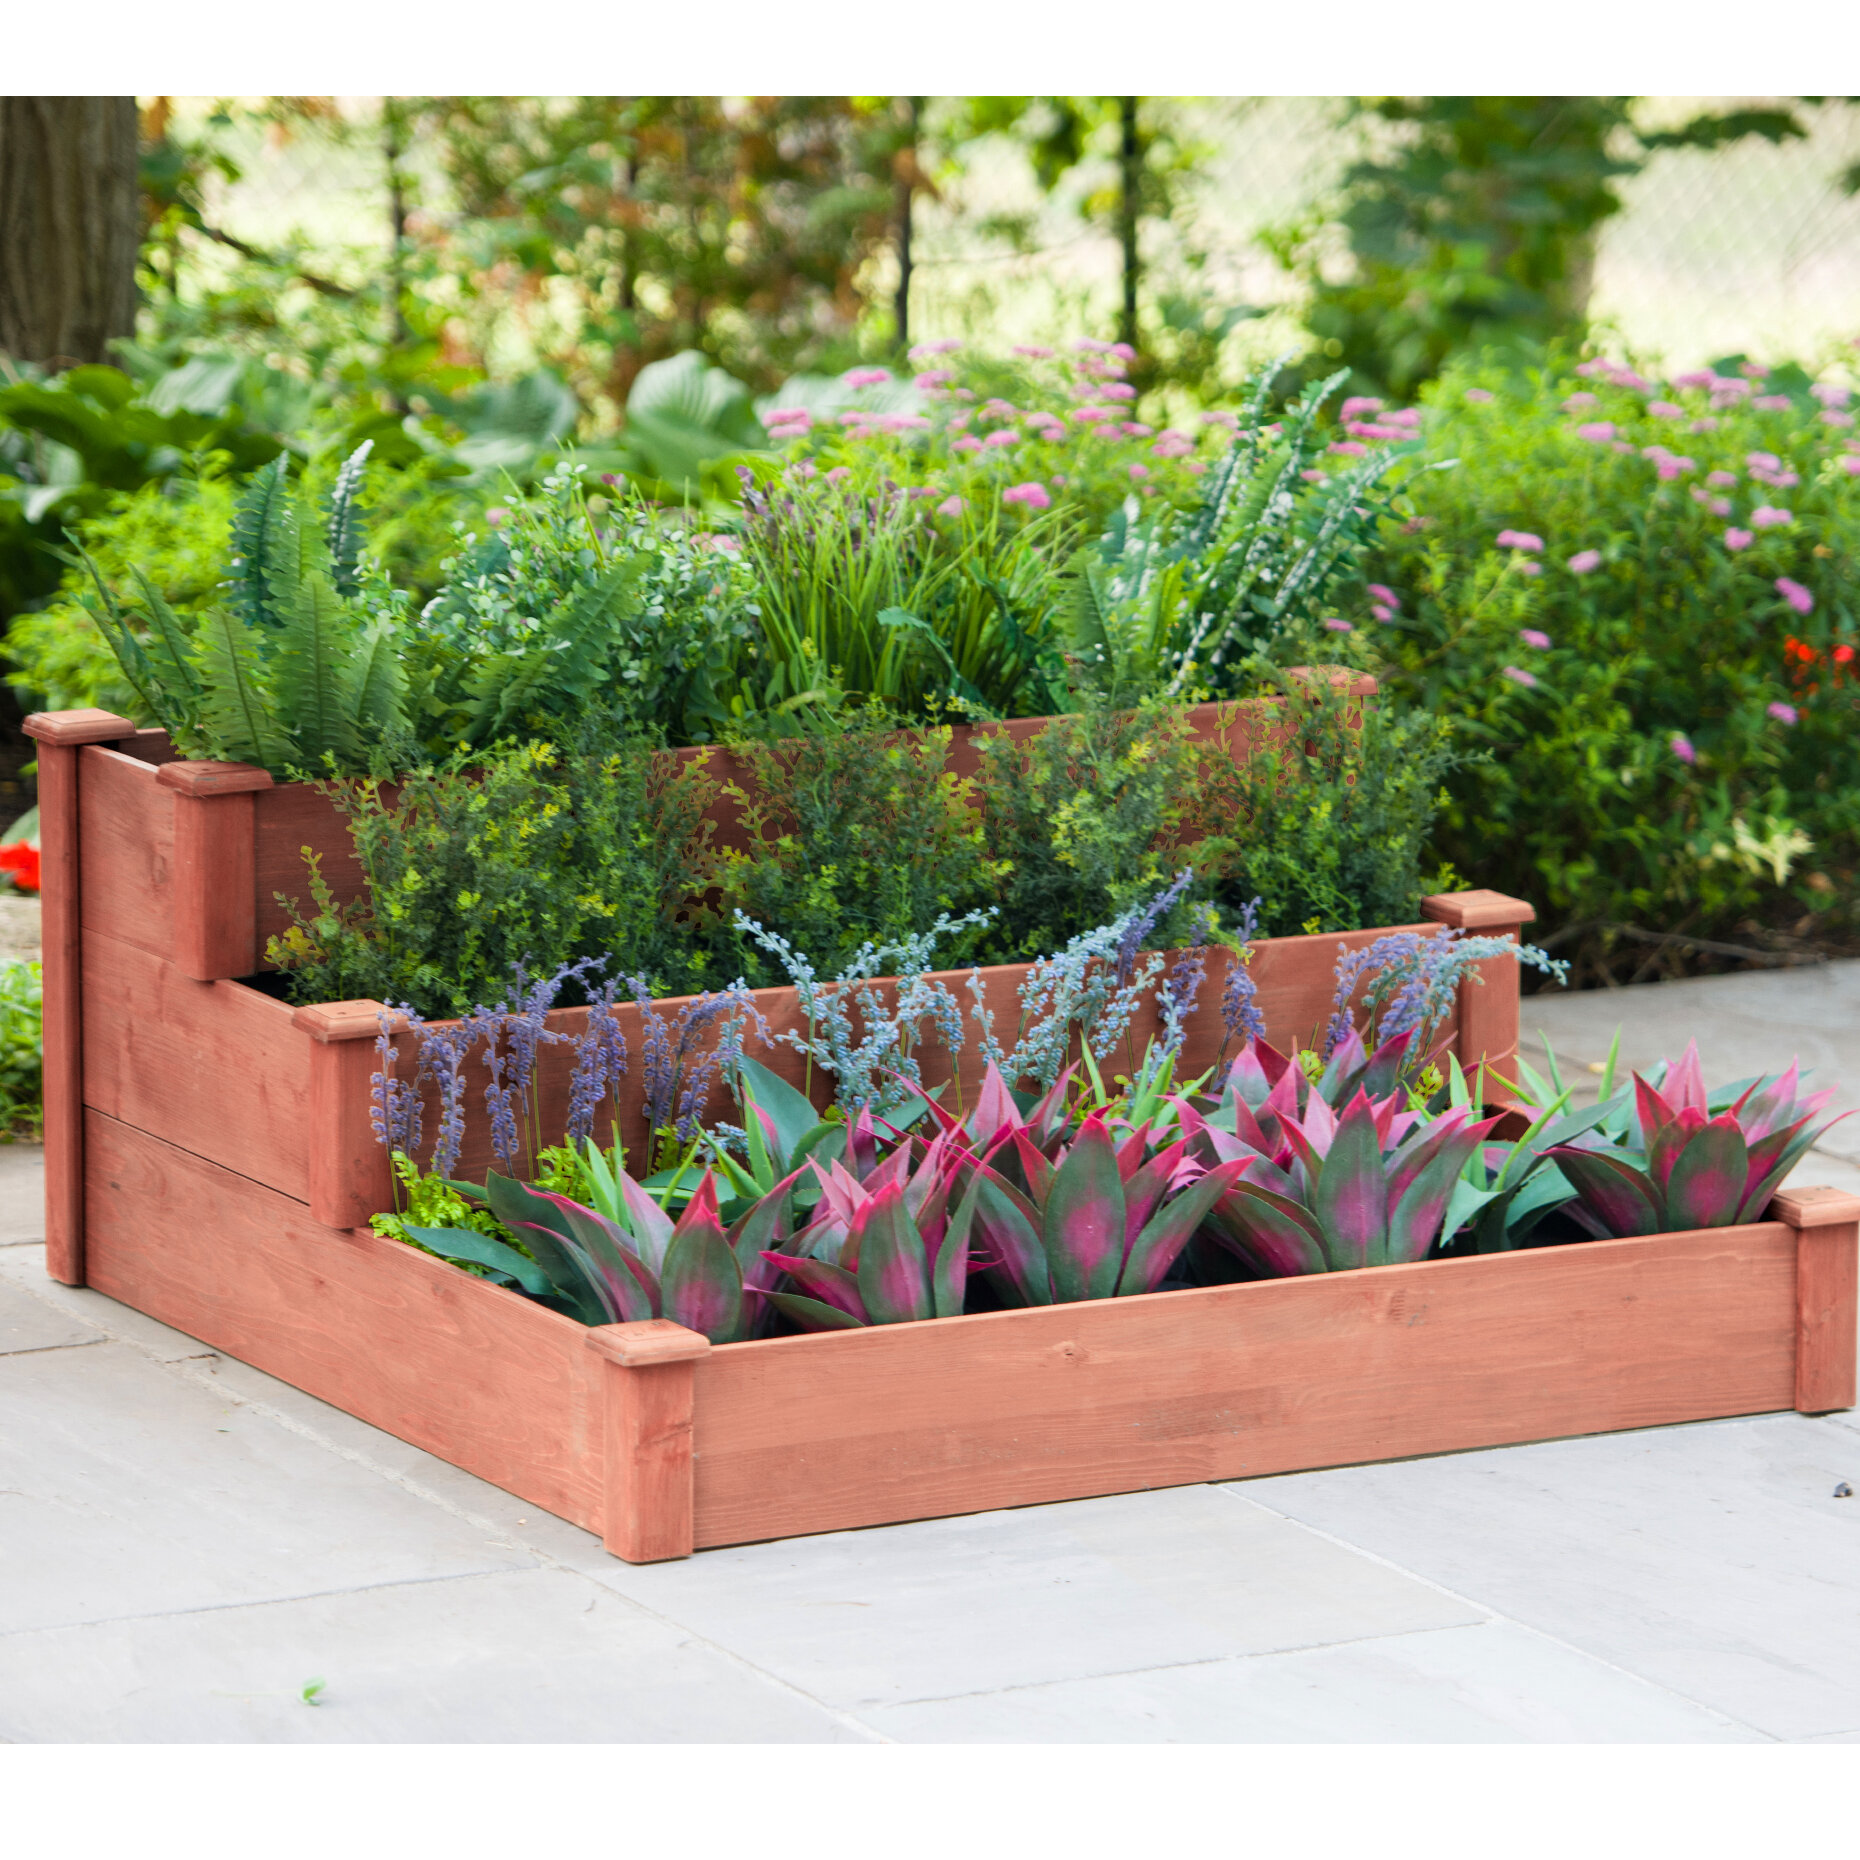 4 x 4 Ft Cedar Raised Garden Bed Vegetable Herb Flower Wood Plant Planter Kit 